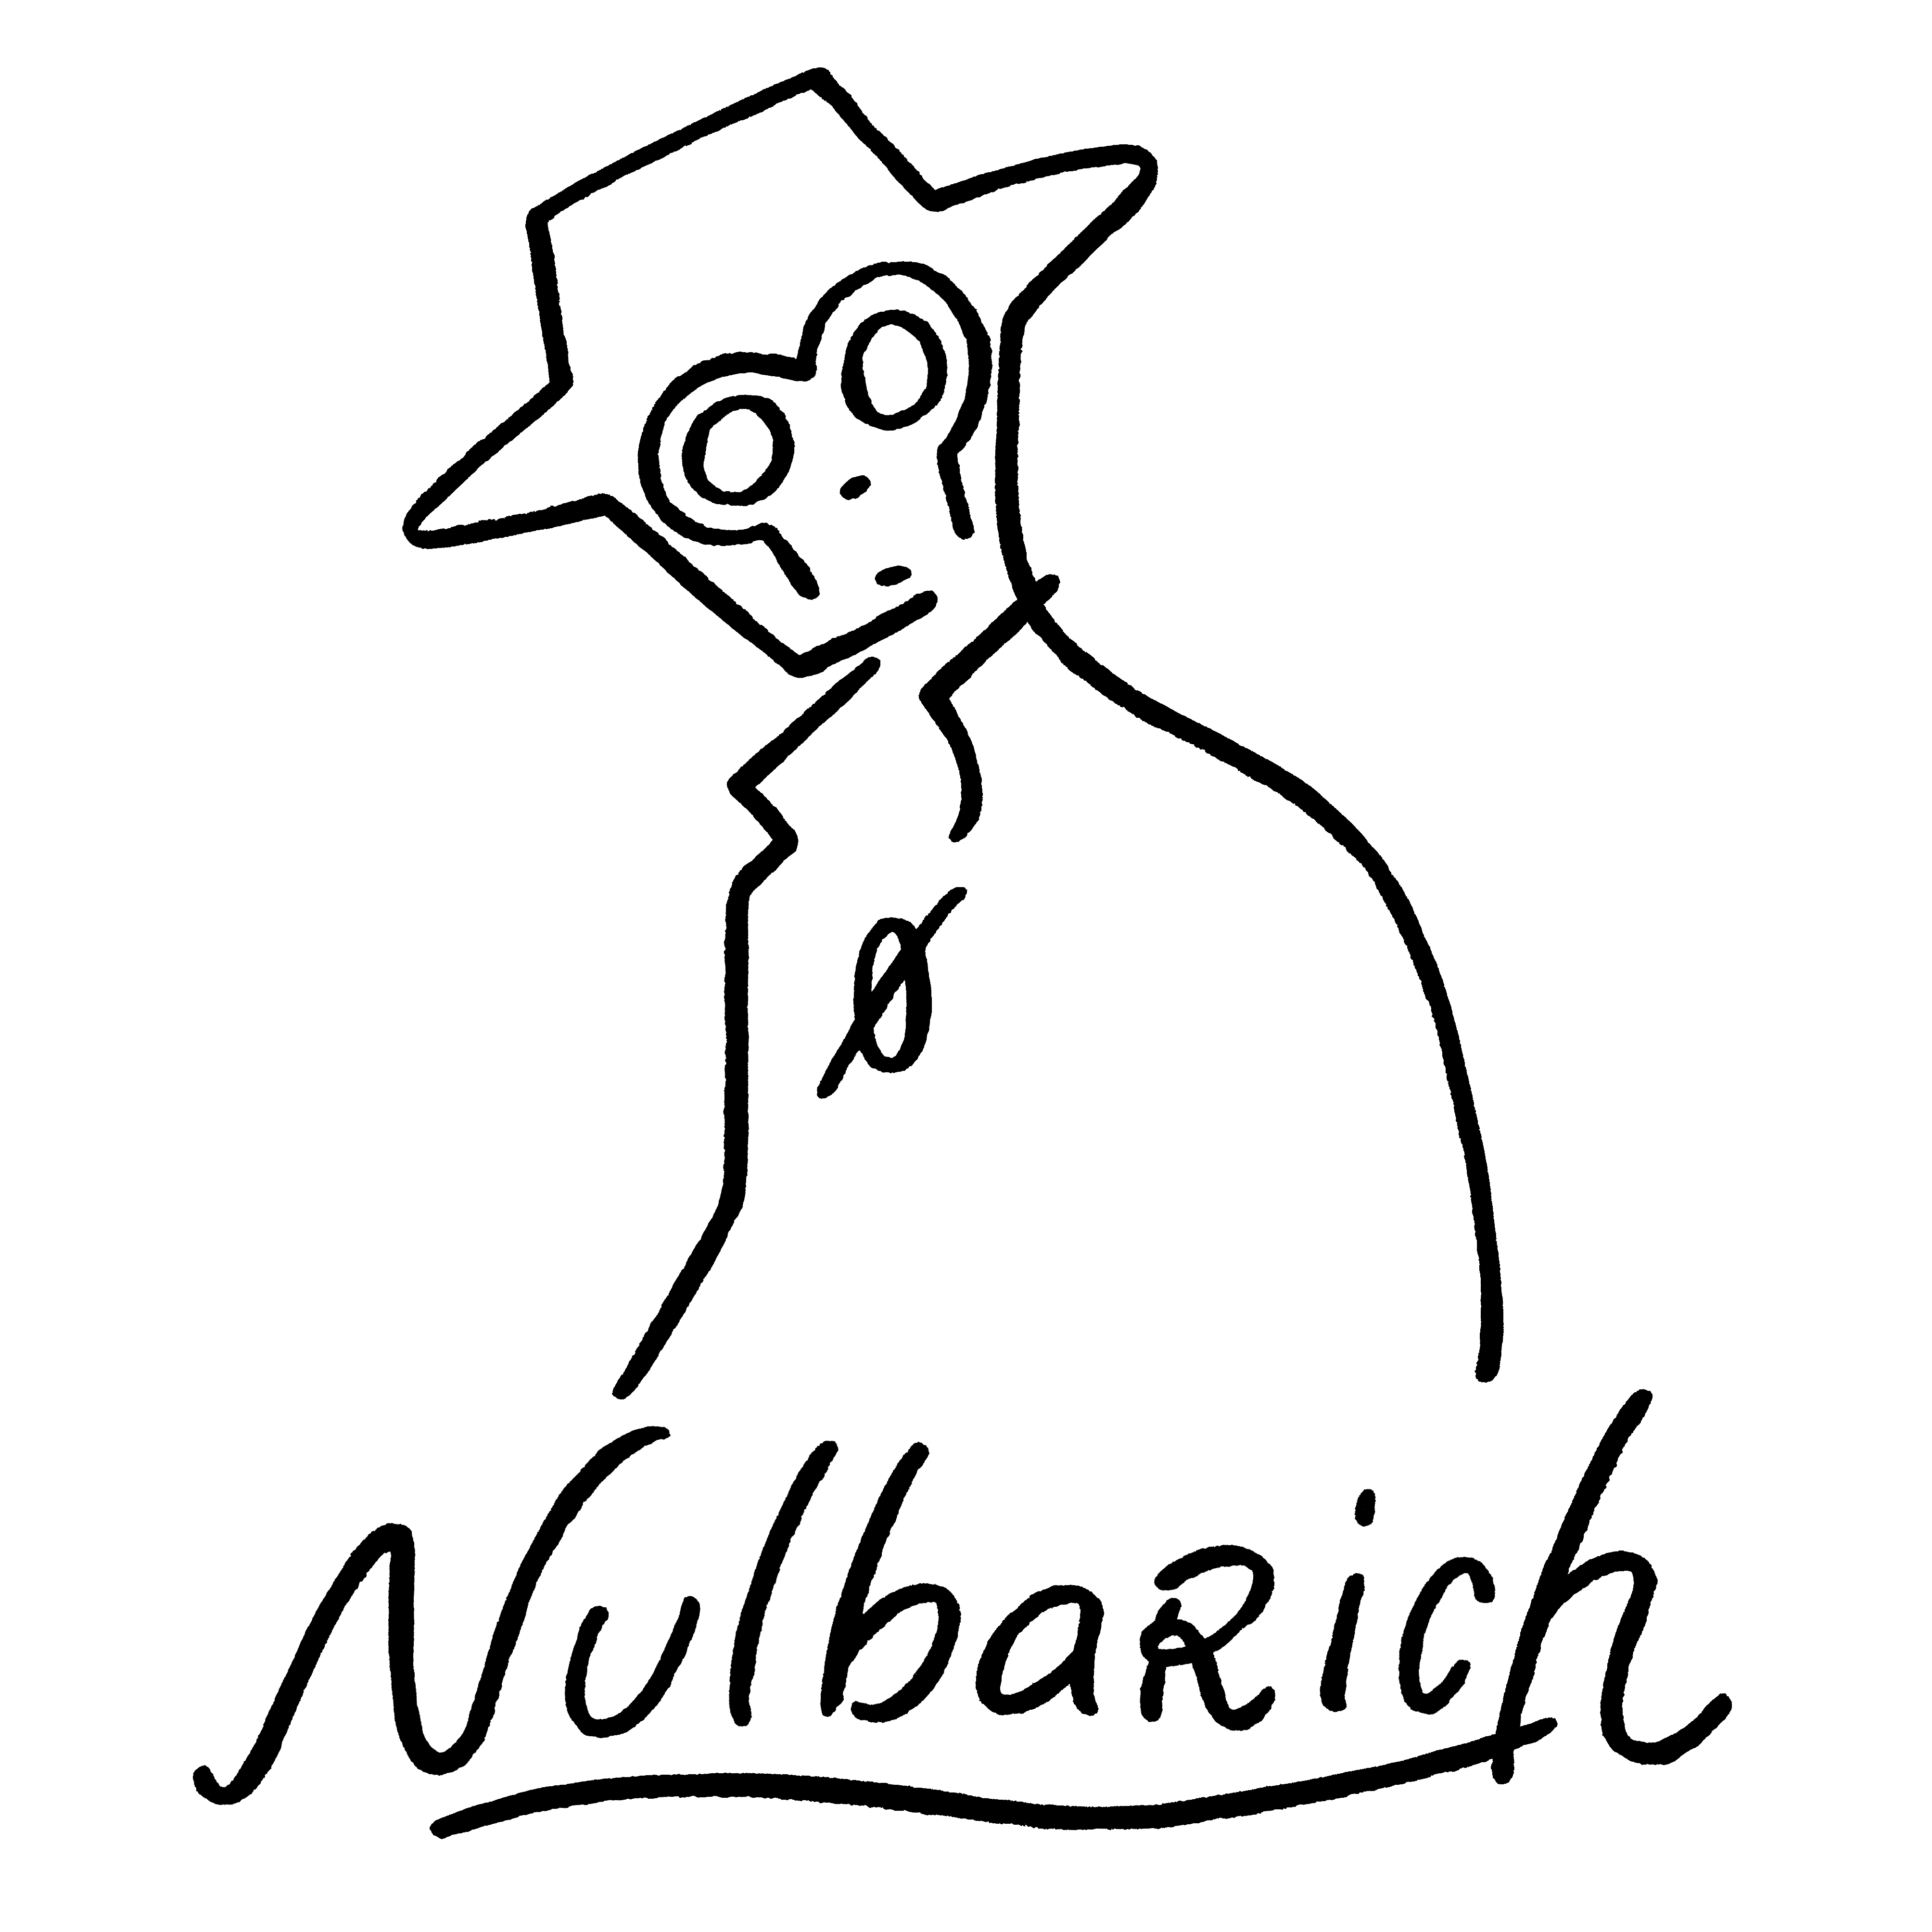 Nulbarich 新曲が2年連続で シチズン クロスシー Cmソングに決定 Spice エンタメ特化型情報メディア スパイス